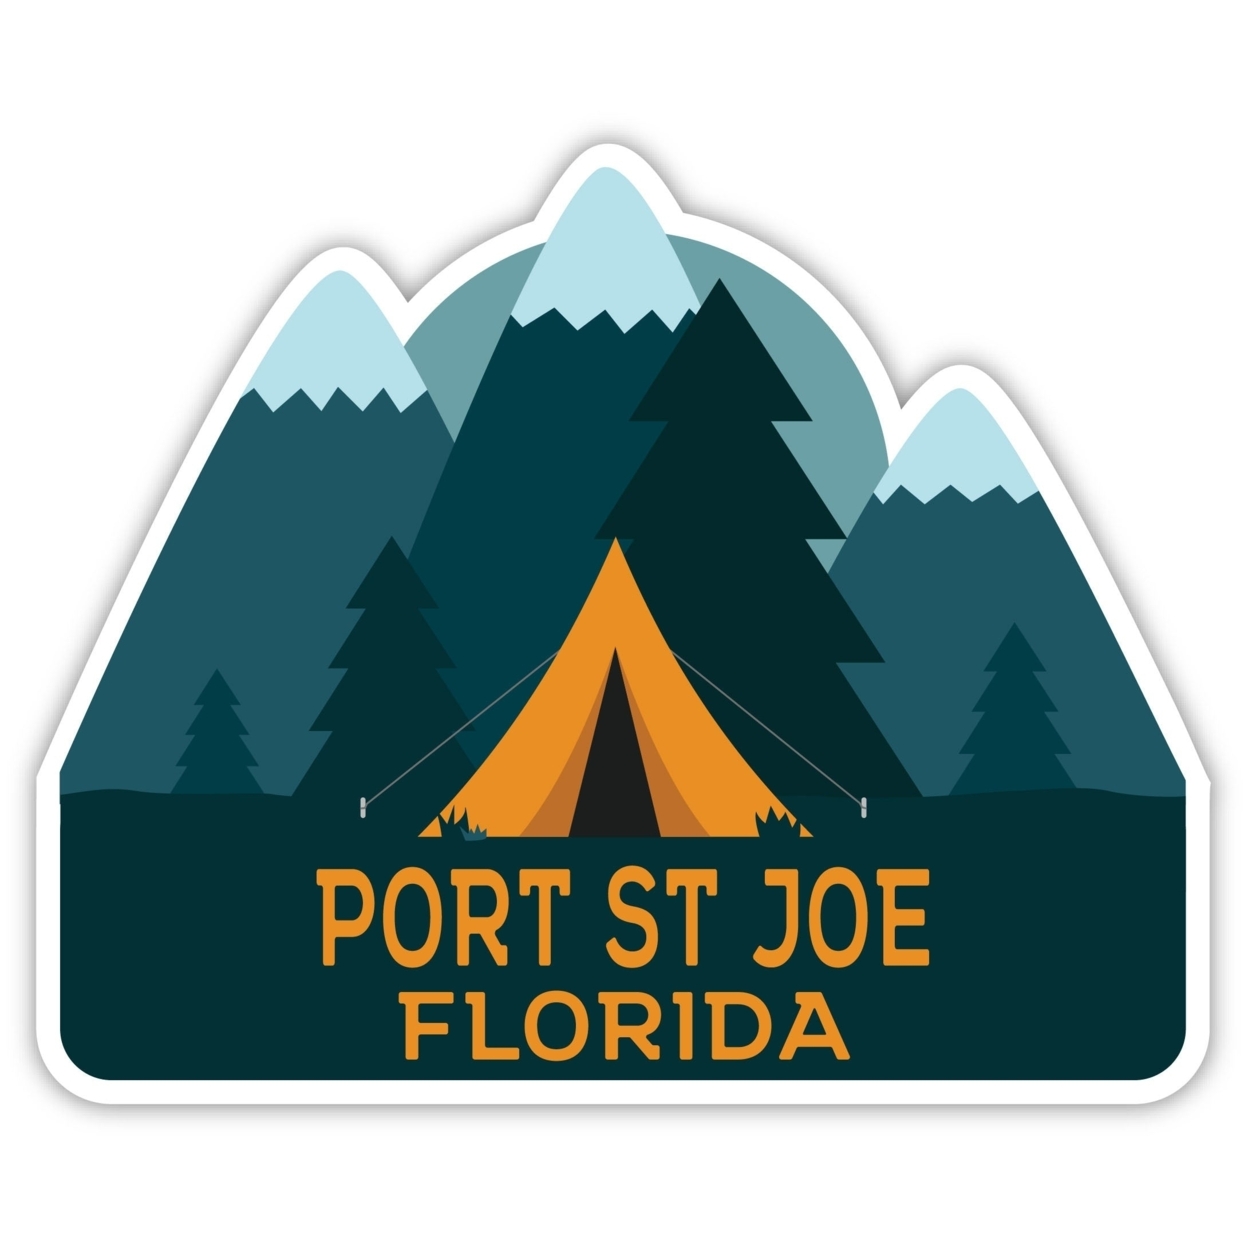 Port St Joe Florida Souvenir Decorative Stickers (Choose Theme And Size) - Single Unit, 4-Inch, Tent